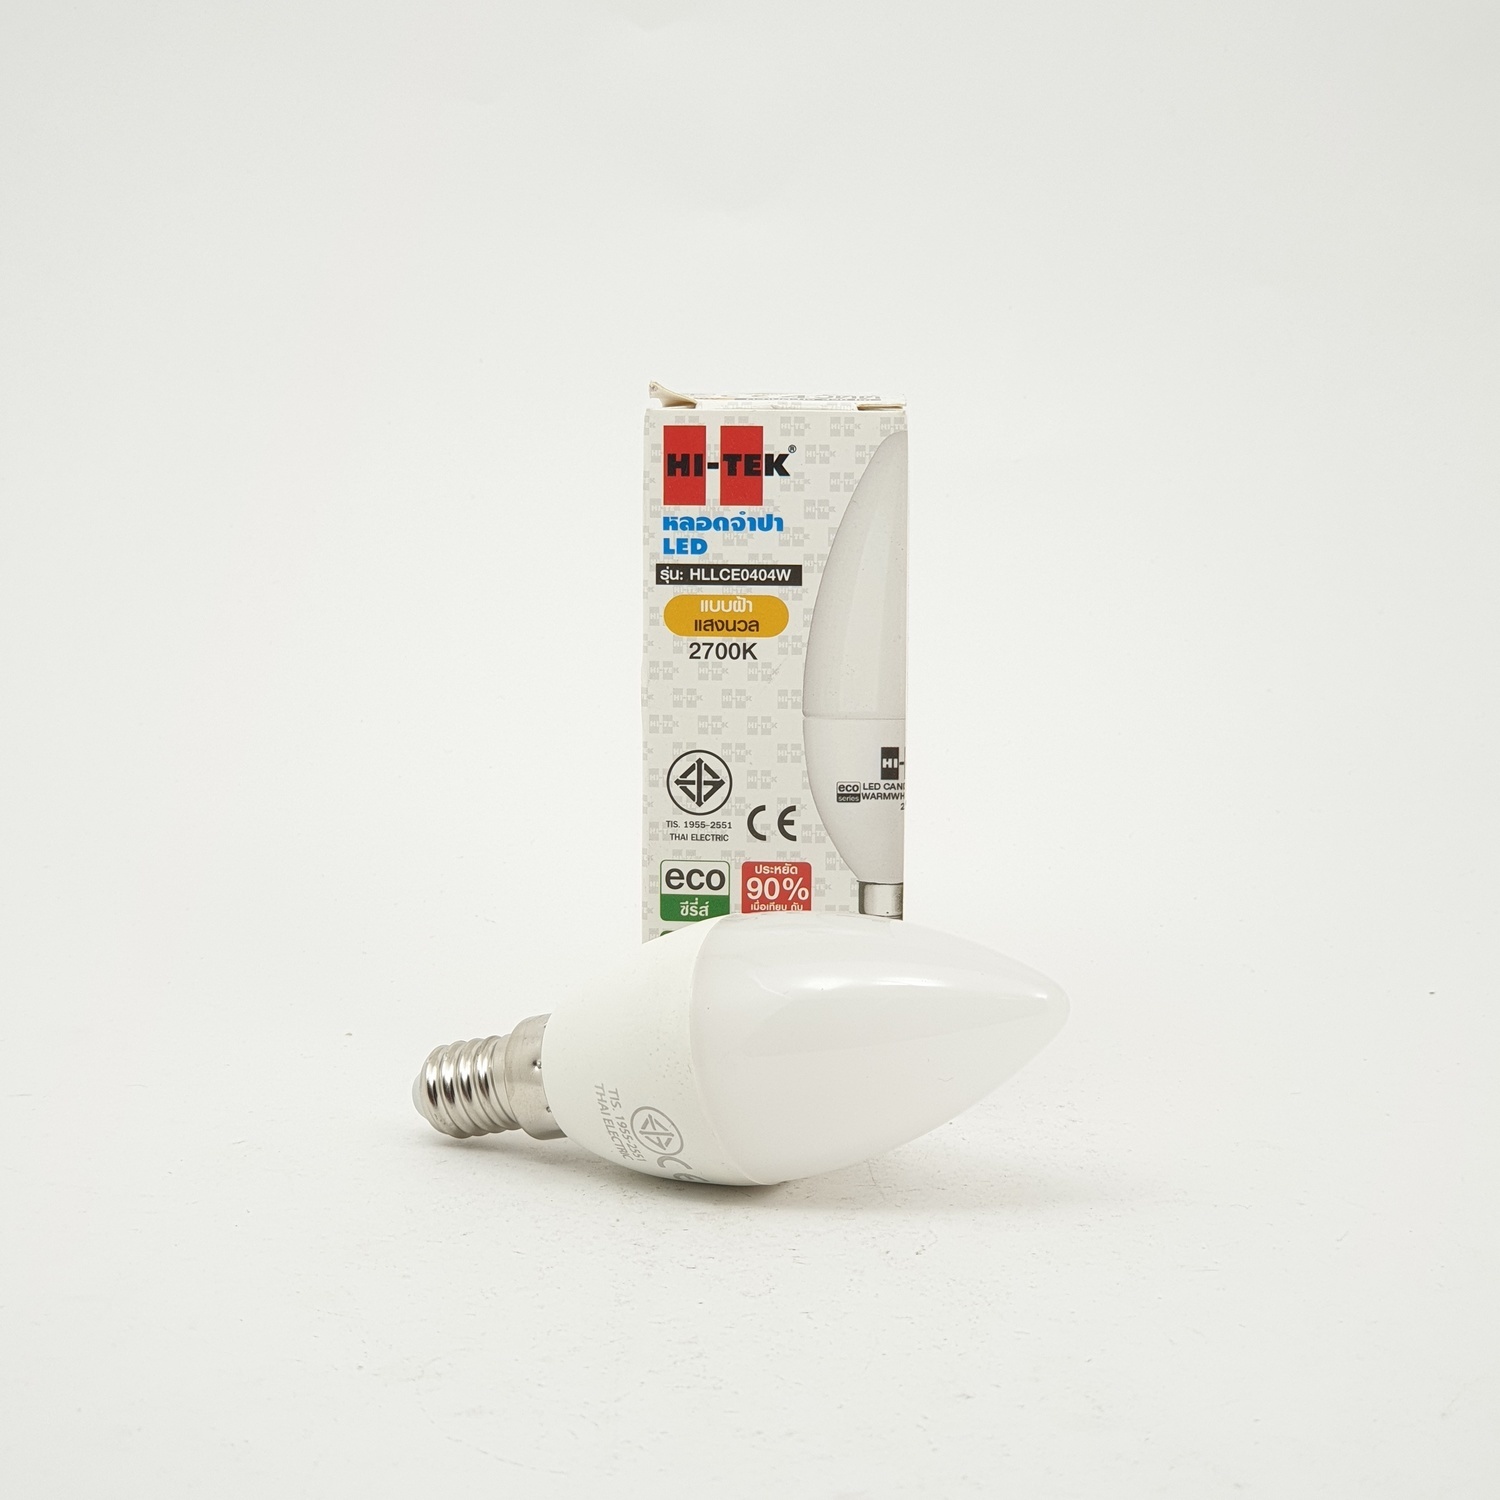 HI-TEK หลอดไฟจำปา LED E14 4W แสงวอร์มไวท์